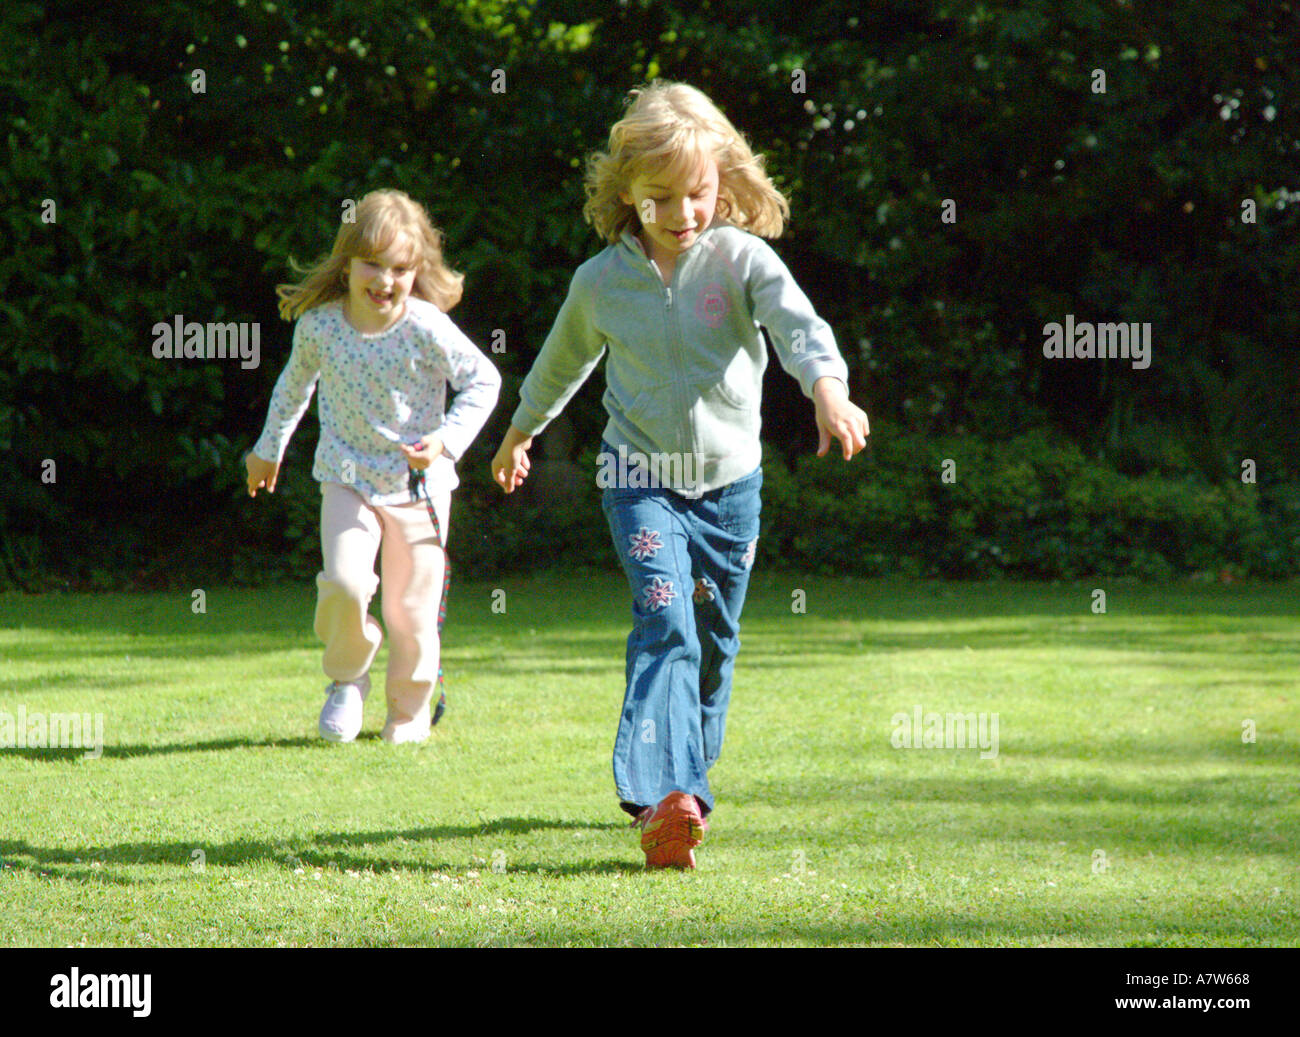 Junge Mädchen laufen auf dem Rasen Stockfoto